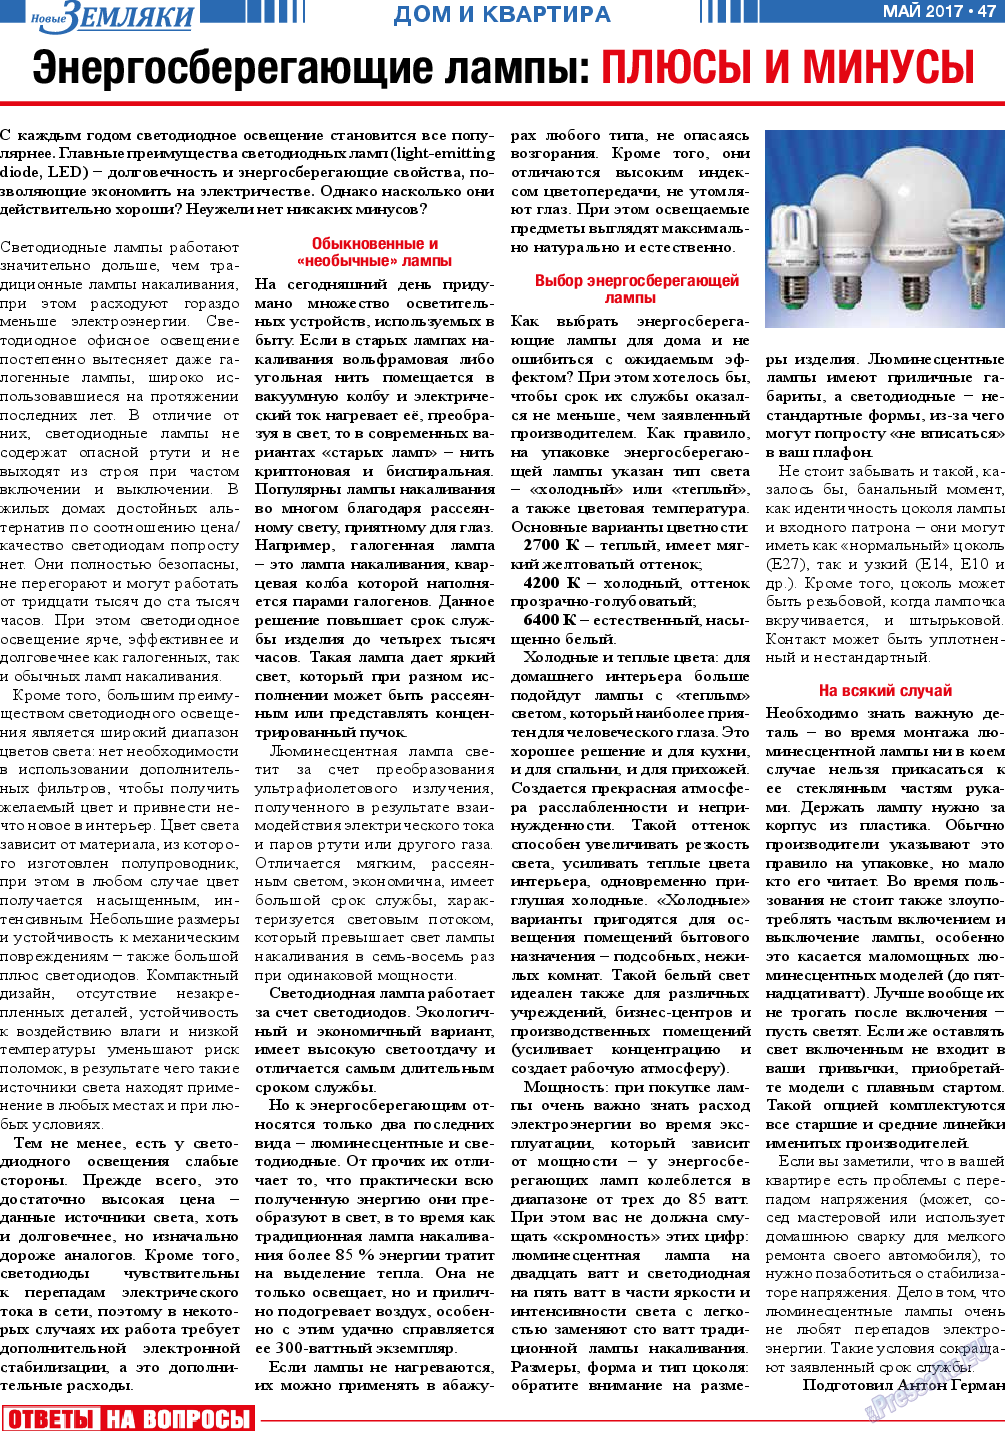 Новые Земляки (газета). 2017 год, номер 5, стр. 47